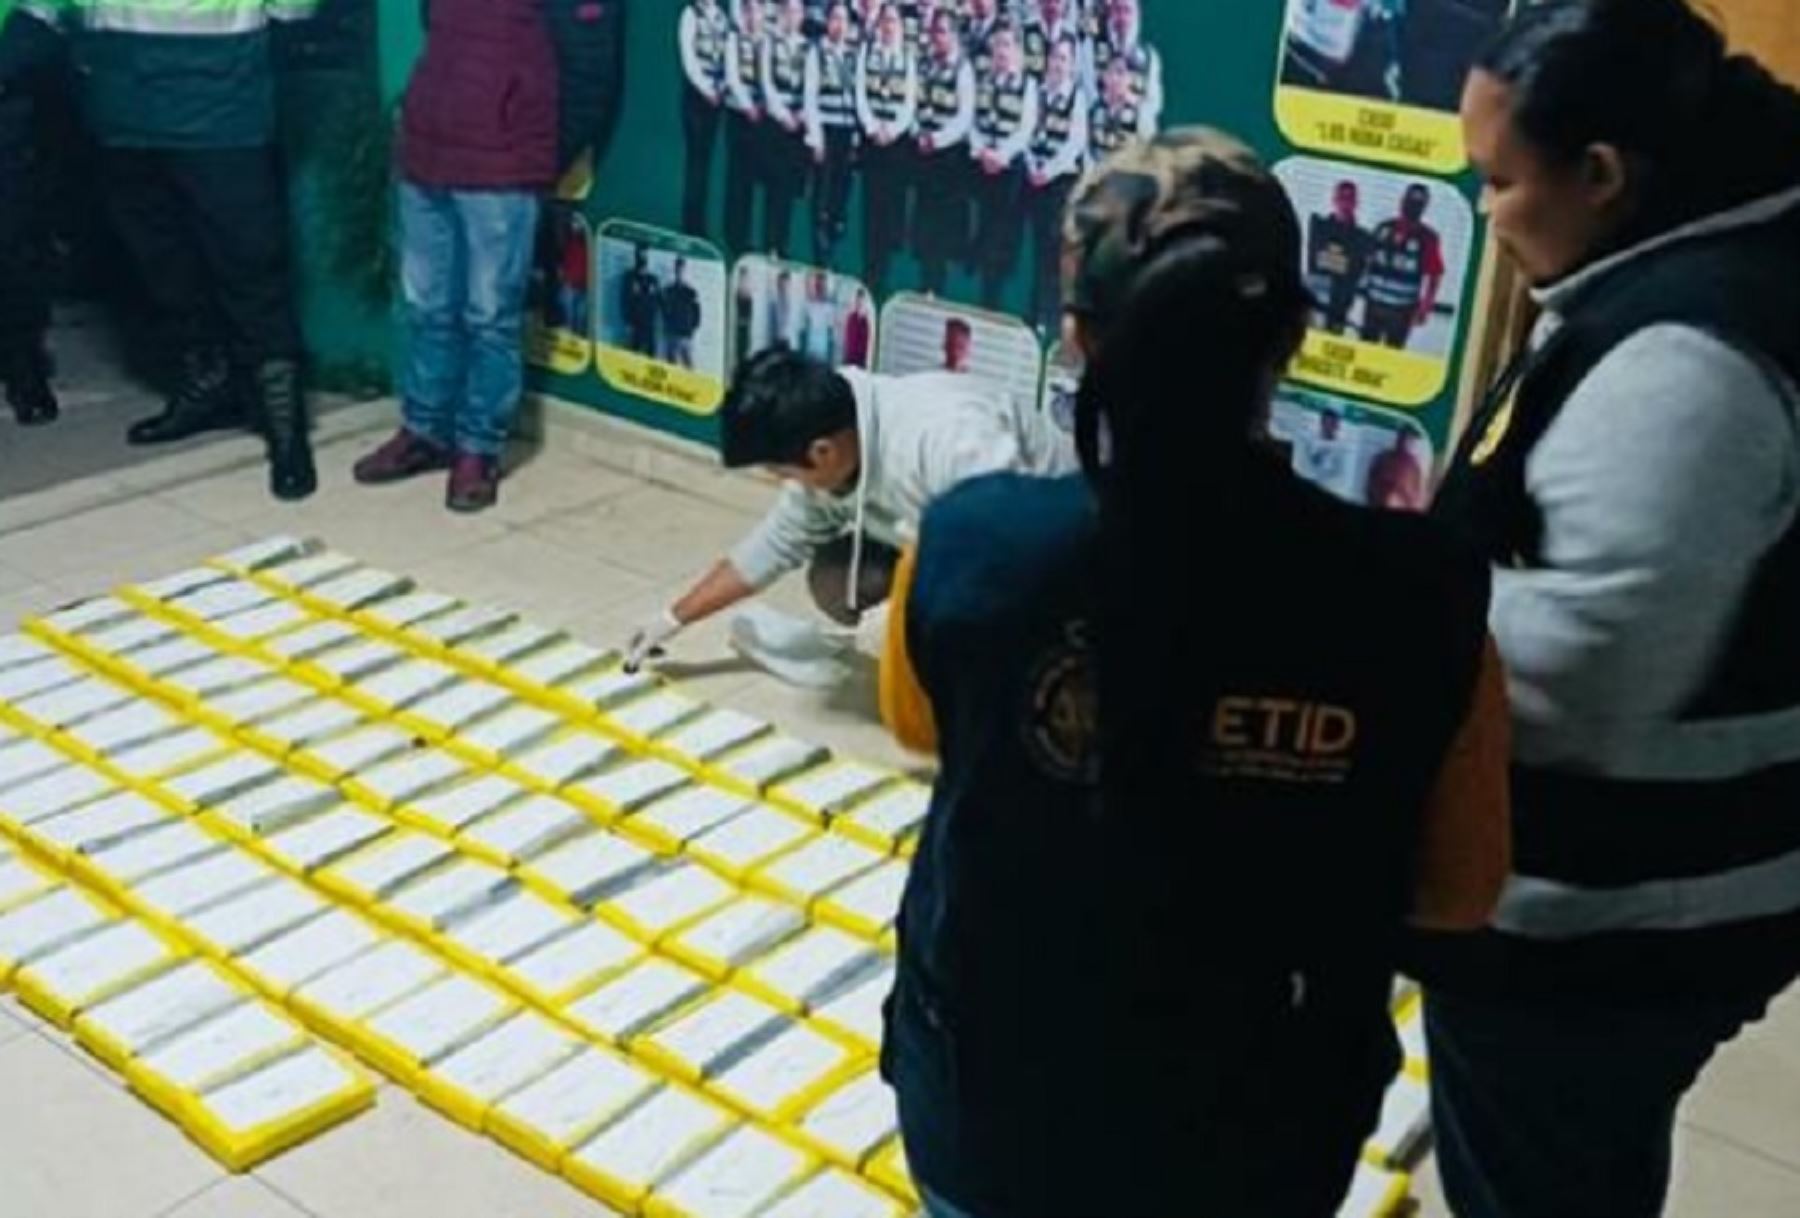 La Policía decomiso más de 112 kilos de alcaloide de cocaína durante una operación de interdicción realizada en las inmediaciones de la sede del Área Antidrogas ubicada en Huancayo, en la región Junín.